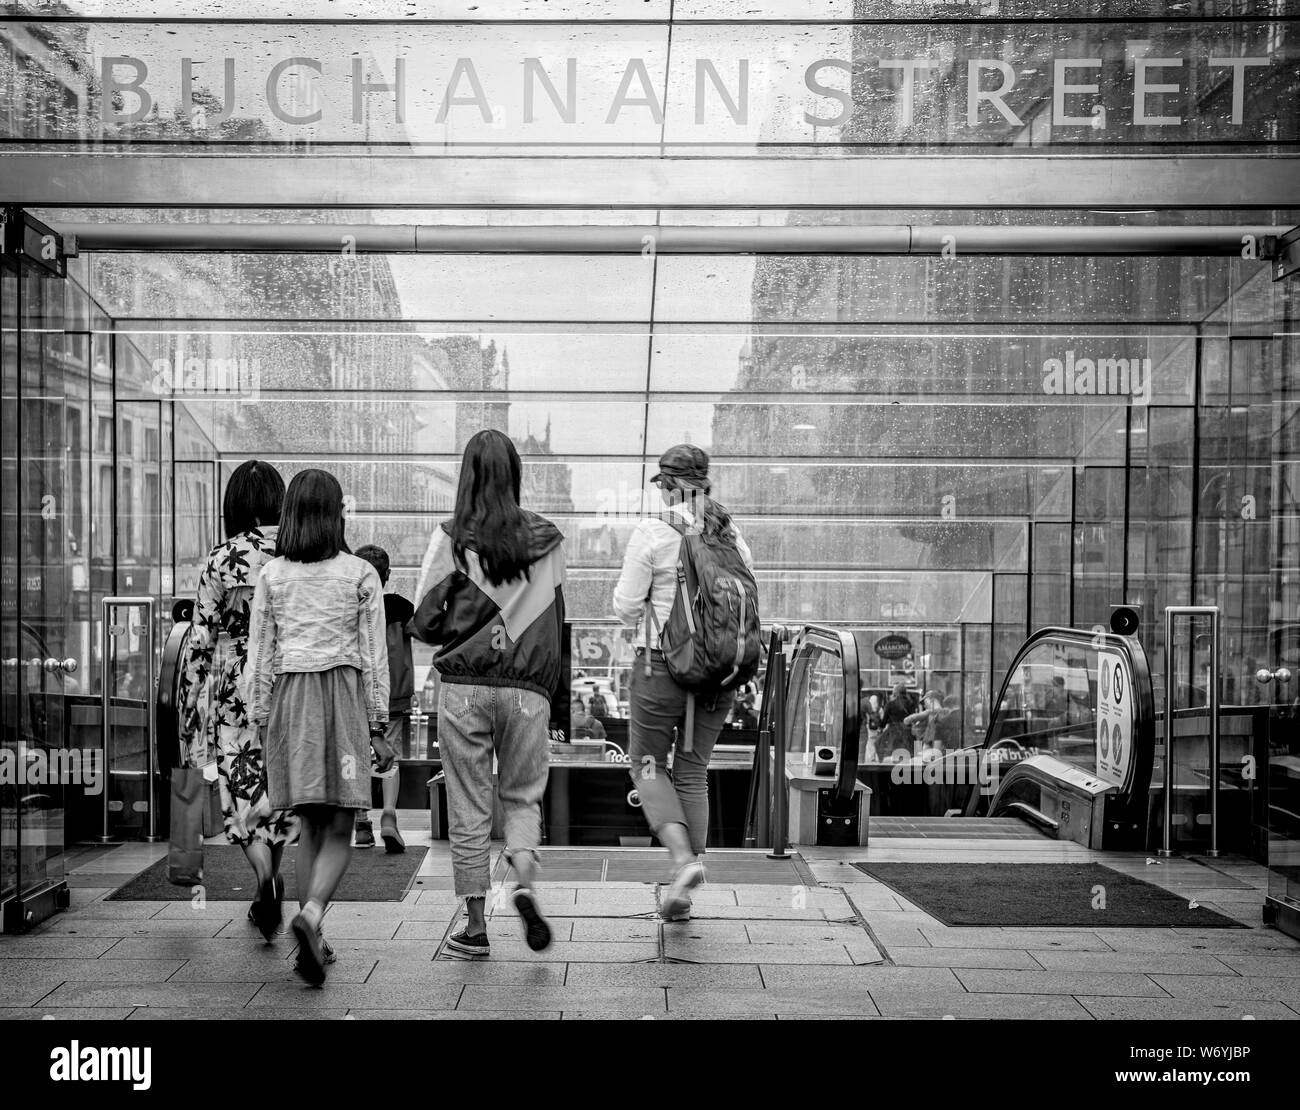 Un groupe de jeunes gens entrent dans le métro Métro de Buchanan Street à Glasgow city centr Banque D'Images